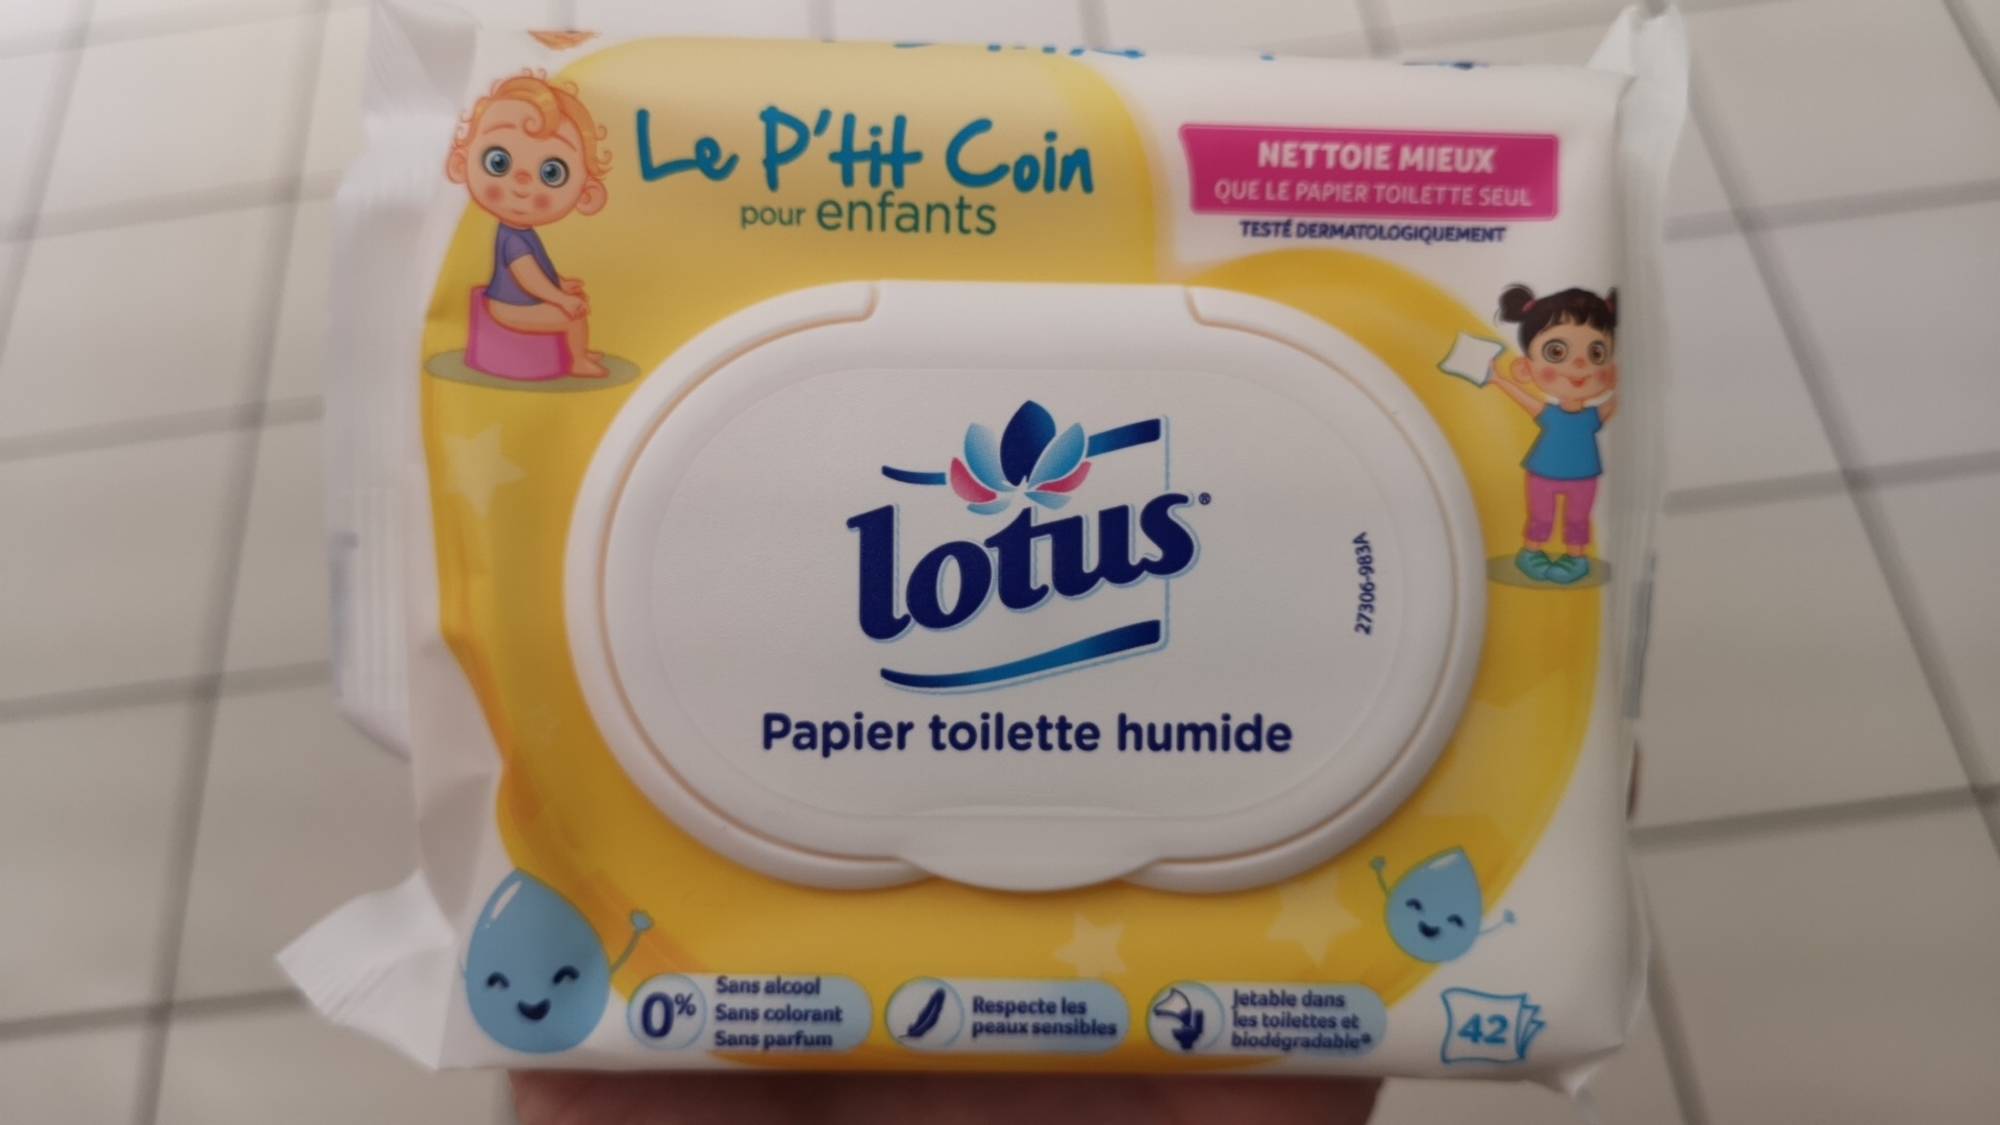 Composition LOTUS Le p'tit coin pour enfants - Papier toilette humide -  UFC-Que Choisir